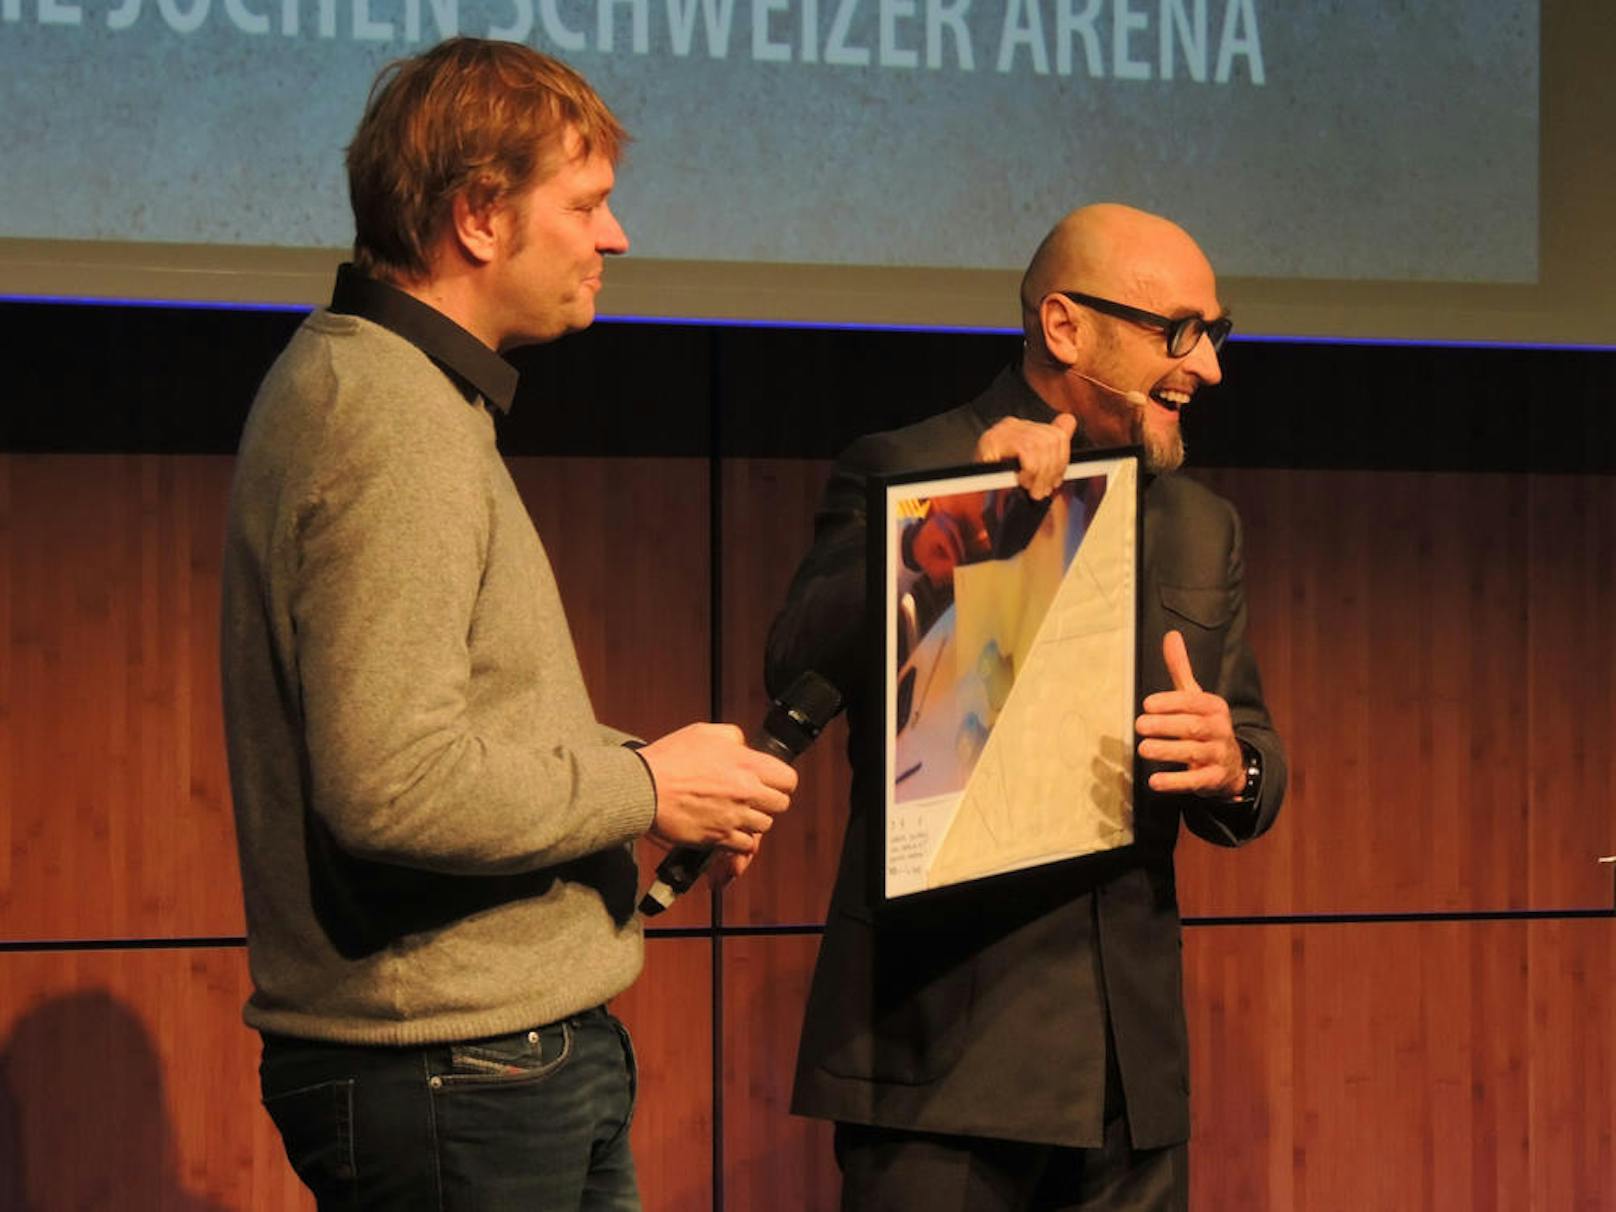 Jochen Schweizer mit der Serviette, auf die er eine erste Skizze der Jochen Schweizer Arena gezeichnet hatte.